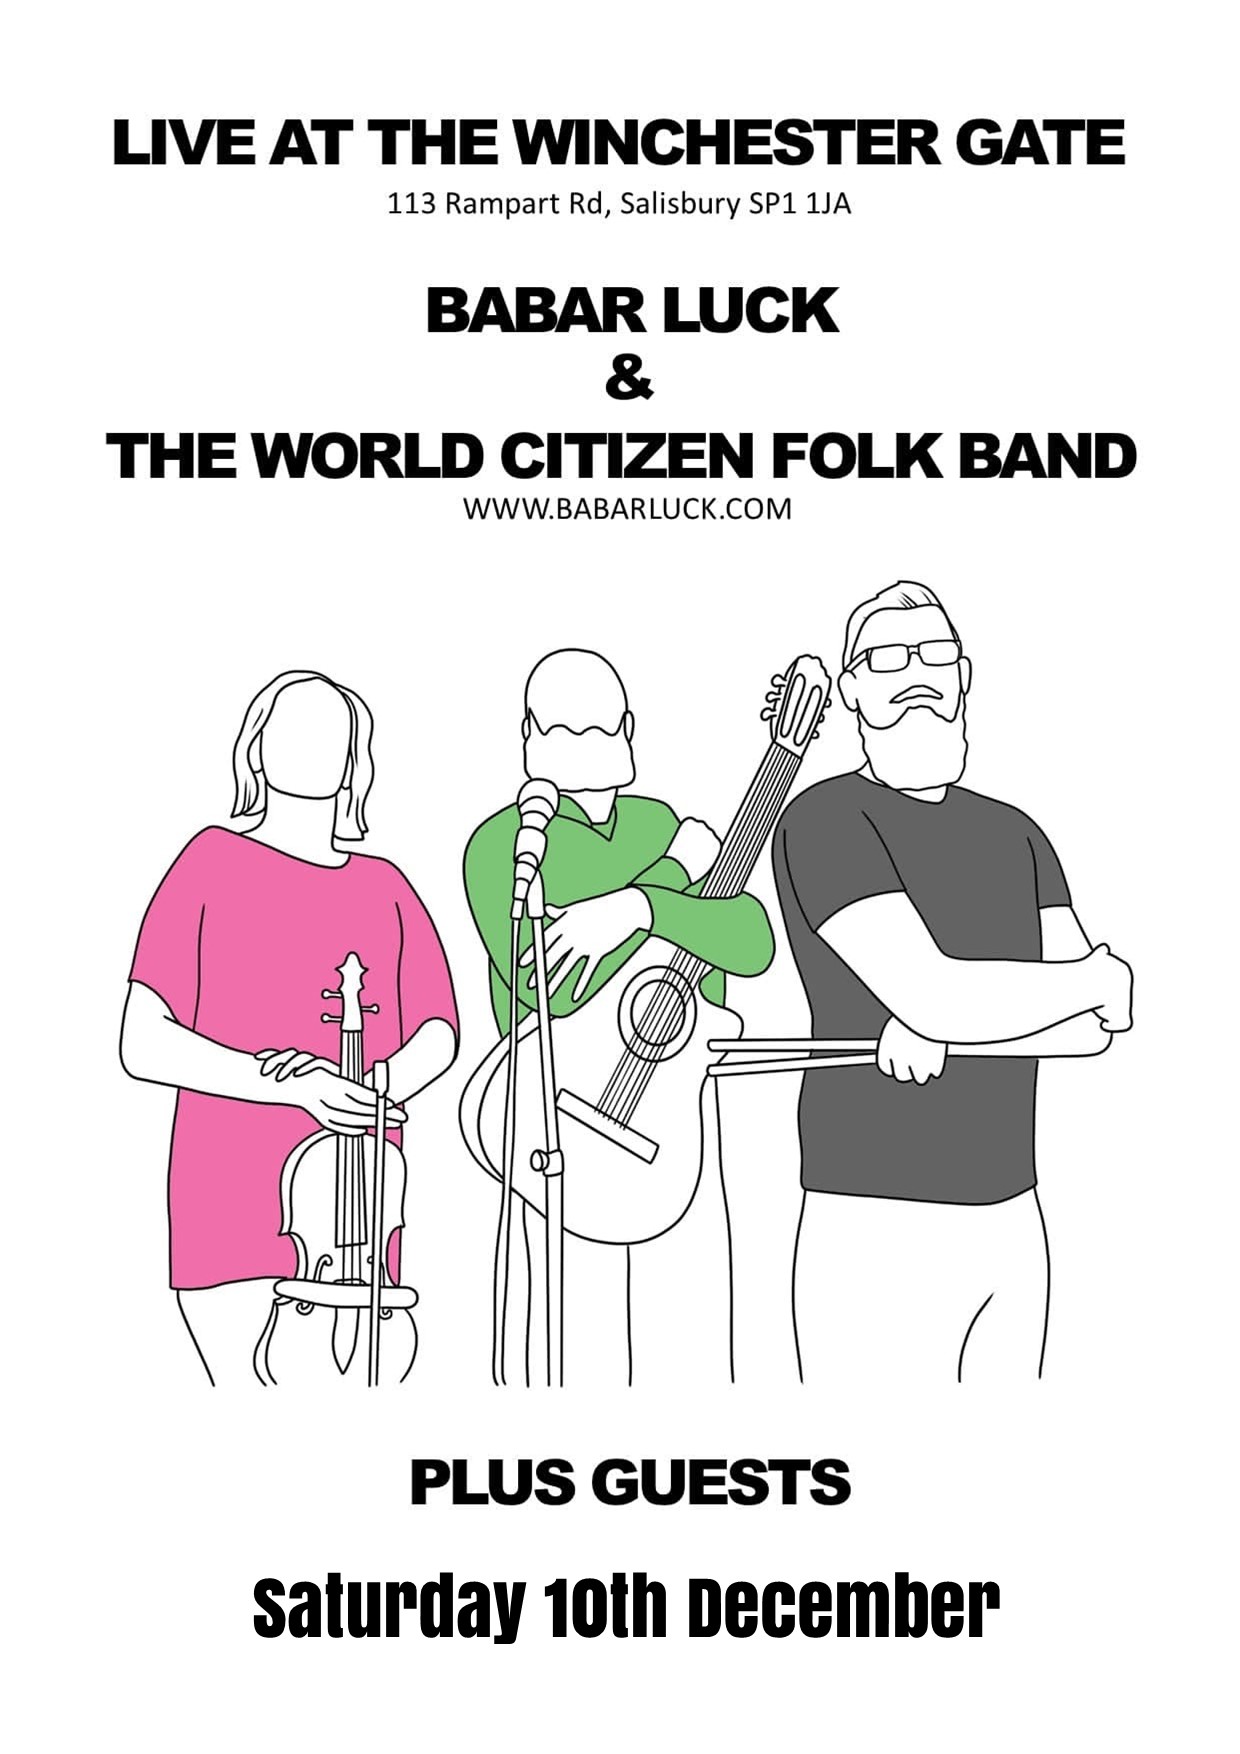 The Babar Luck + World Citizen Folk Band